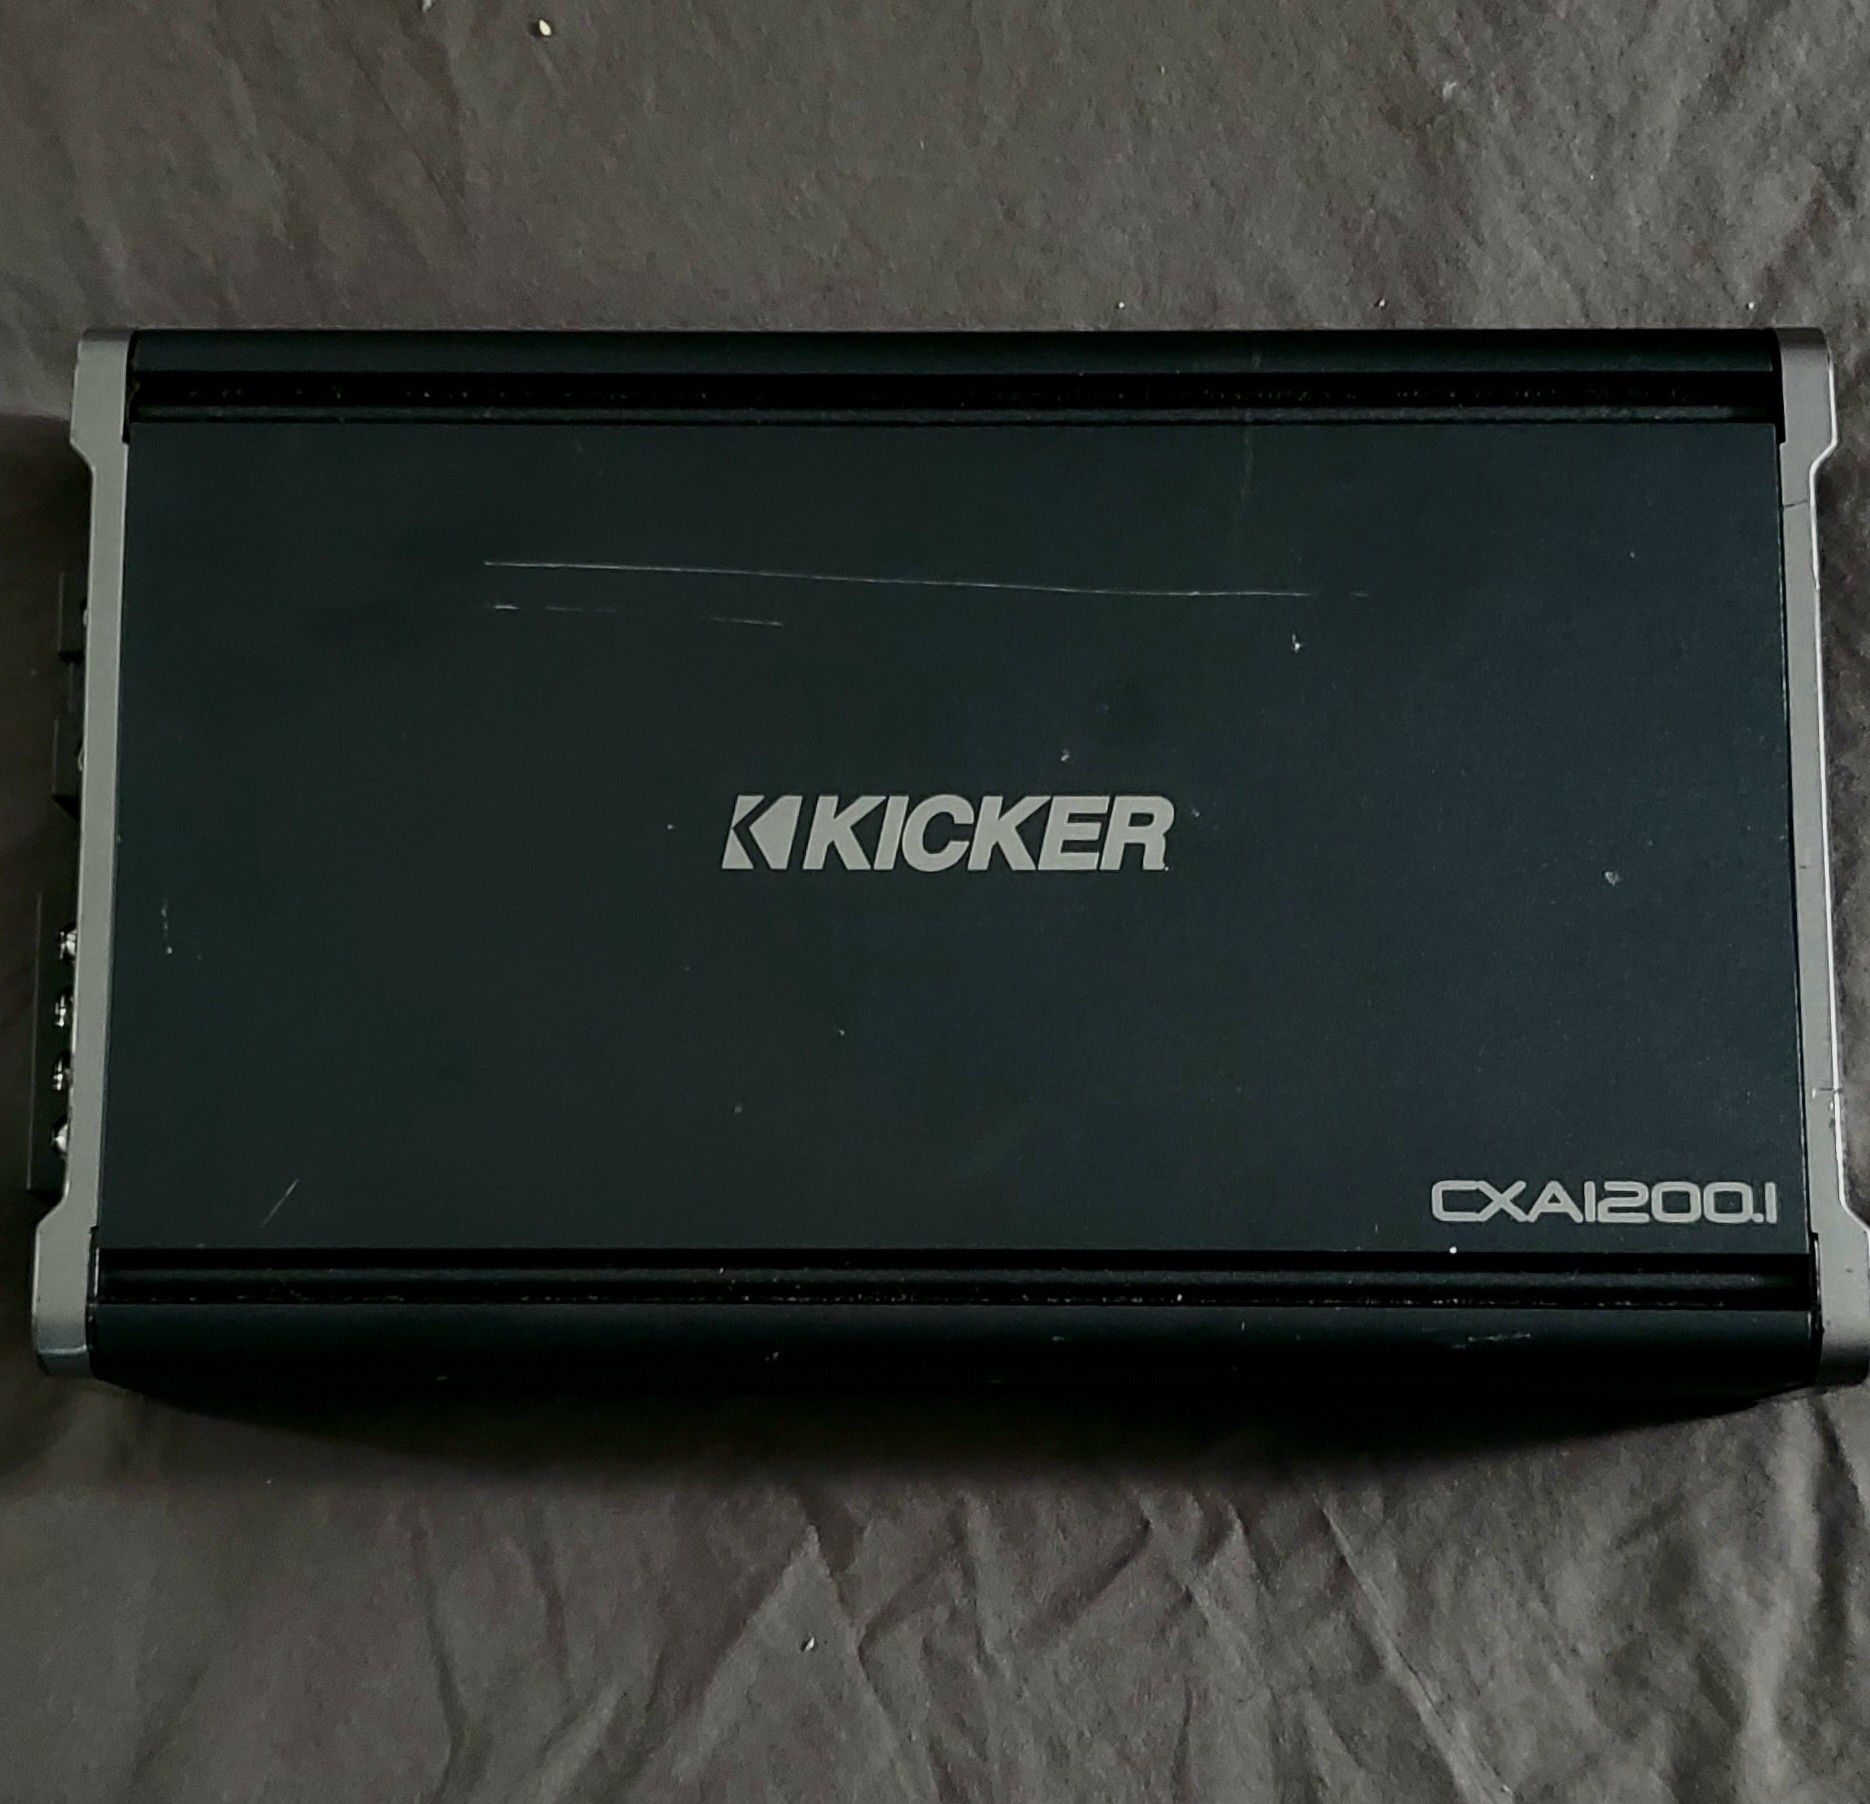 Kicker 43CXA1200.1 Amp